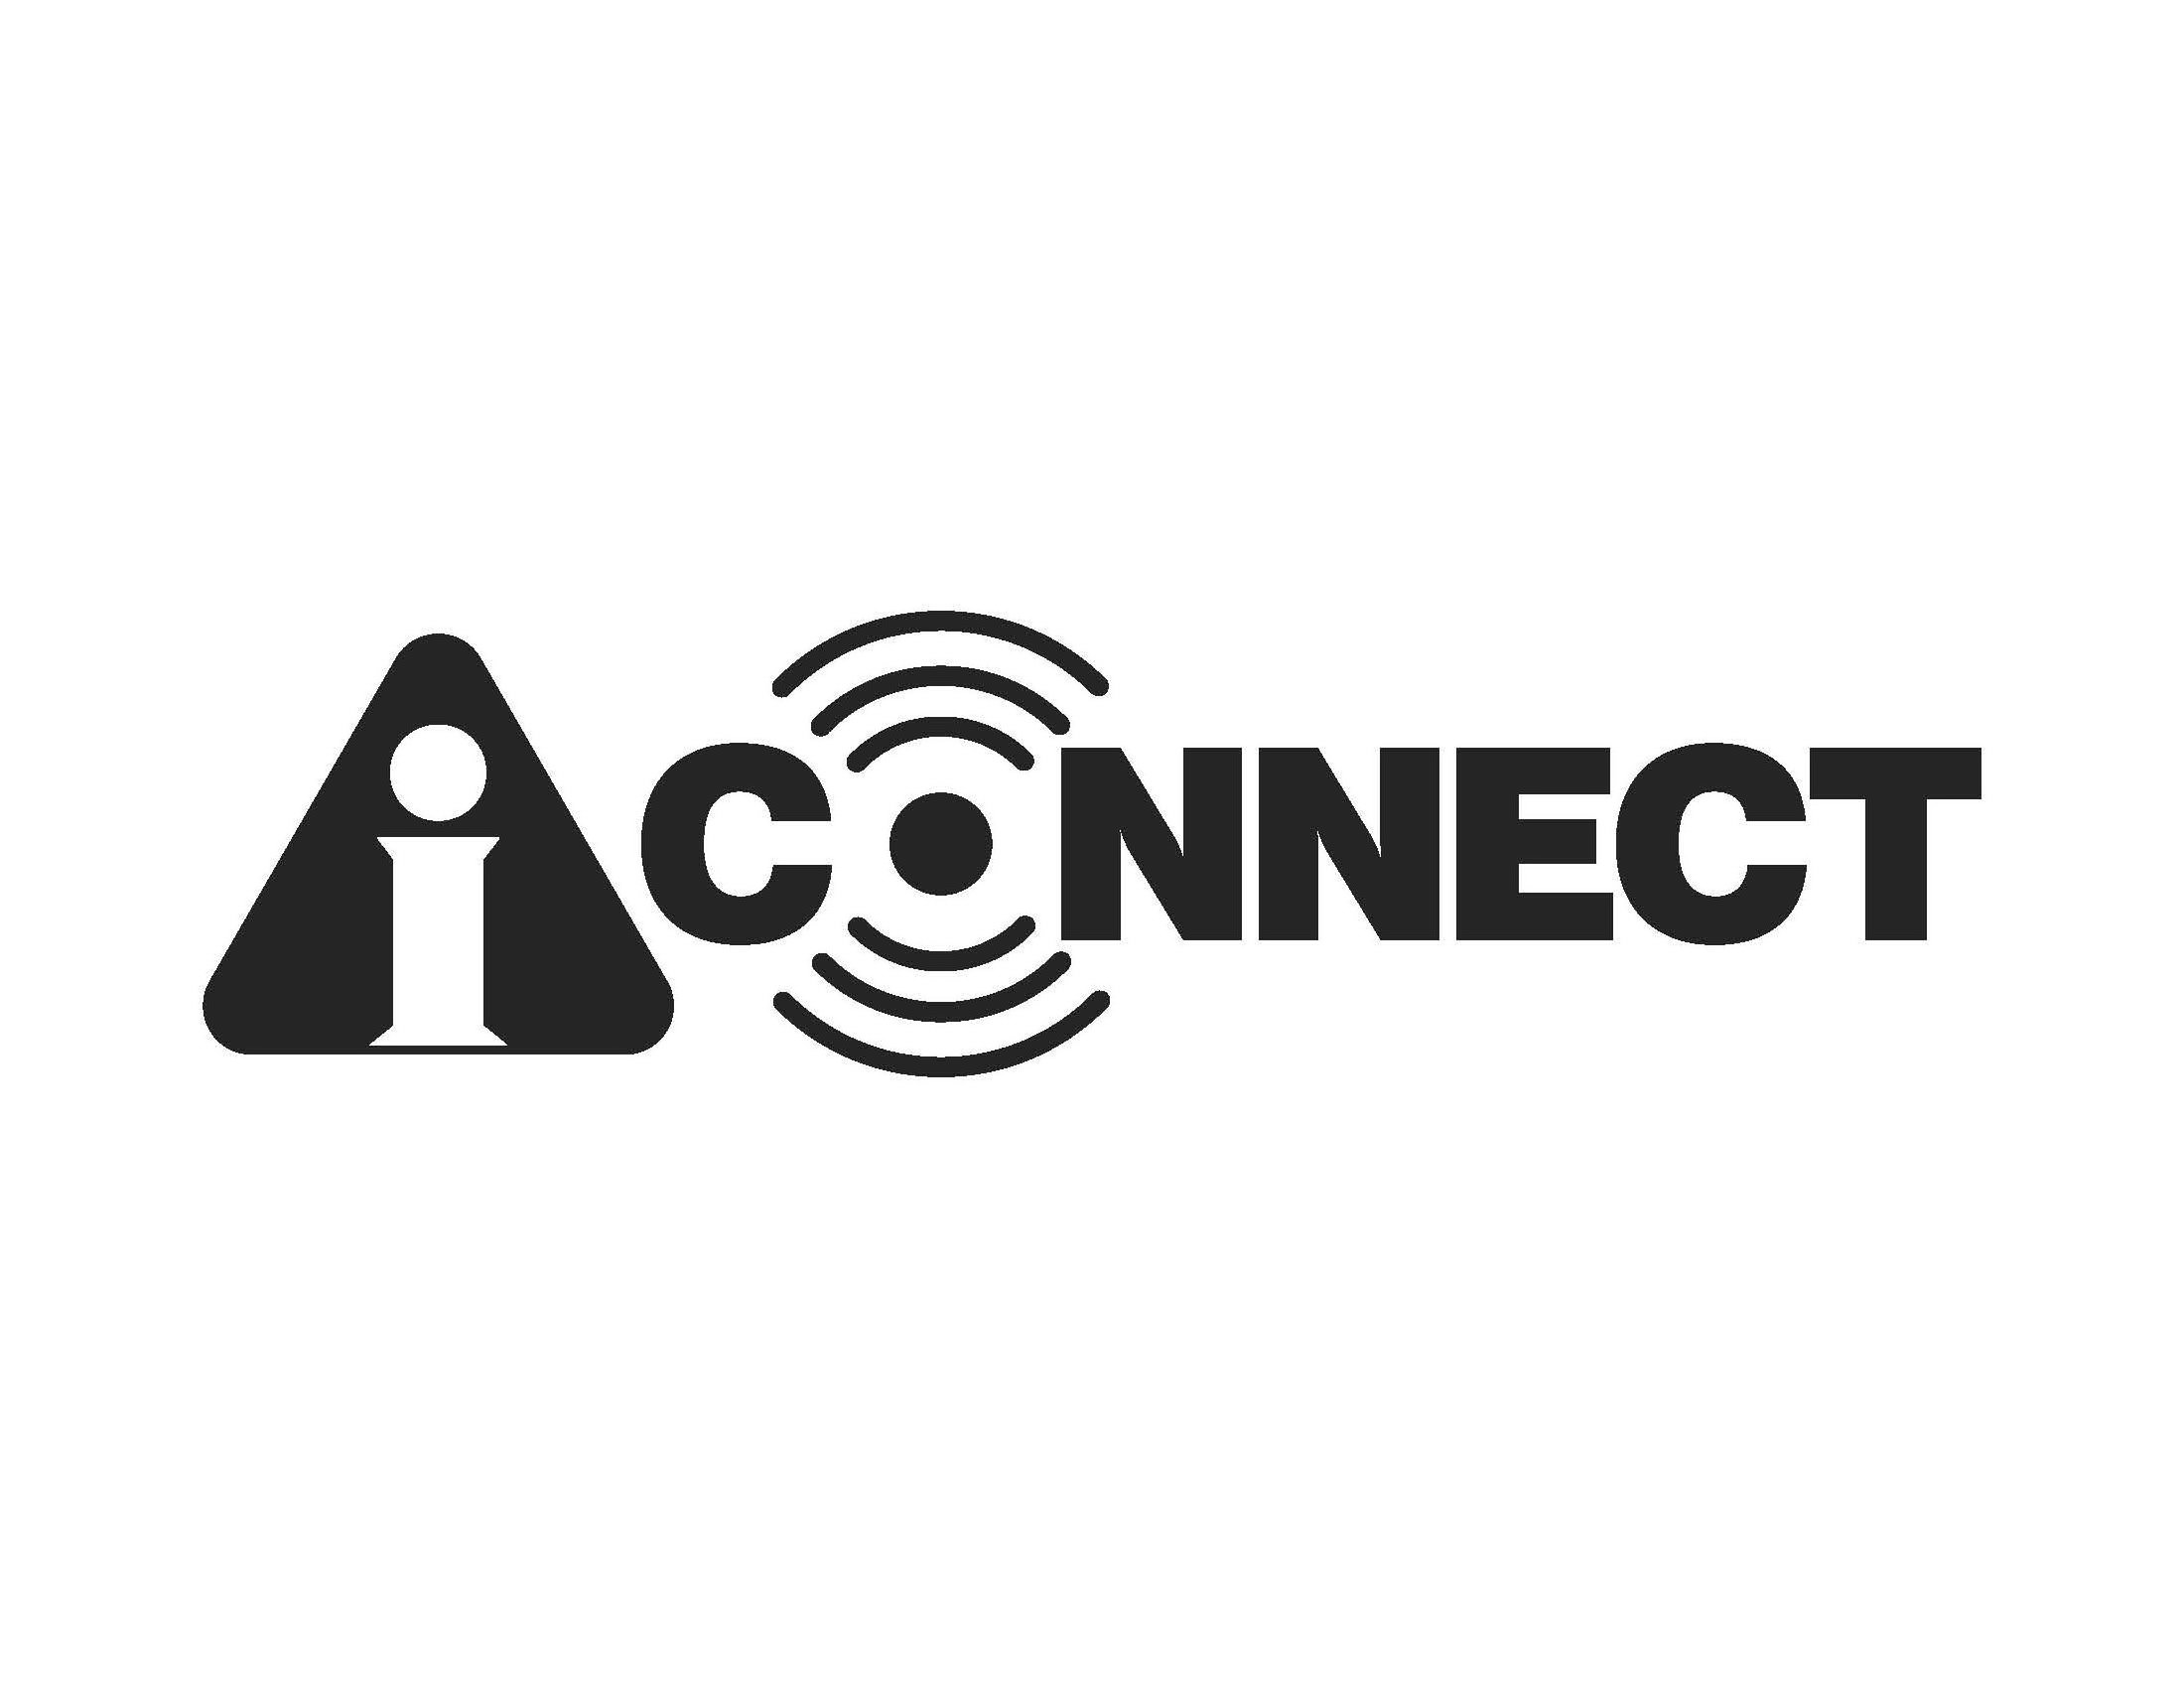 AI CONNECT